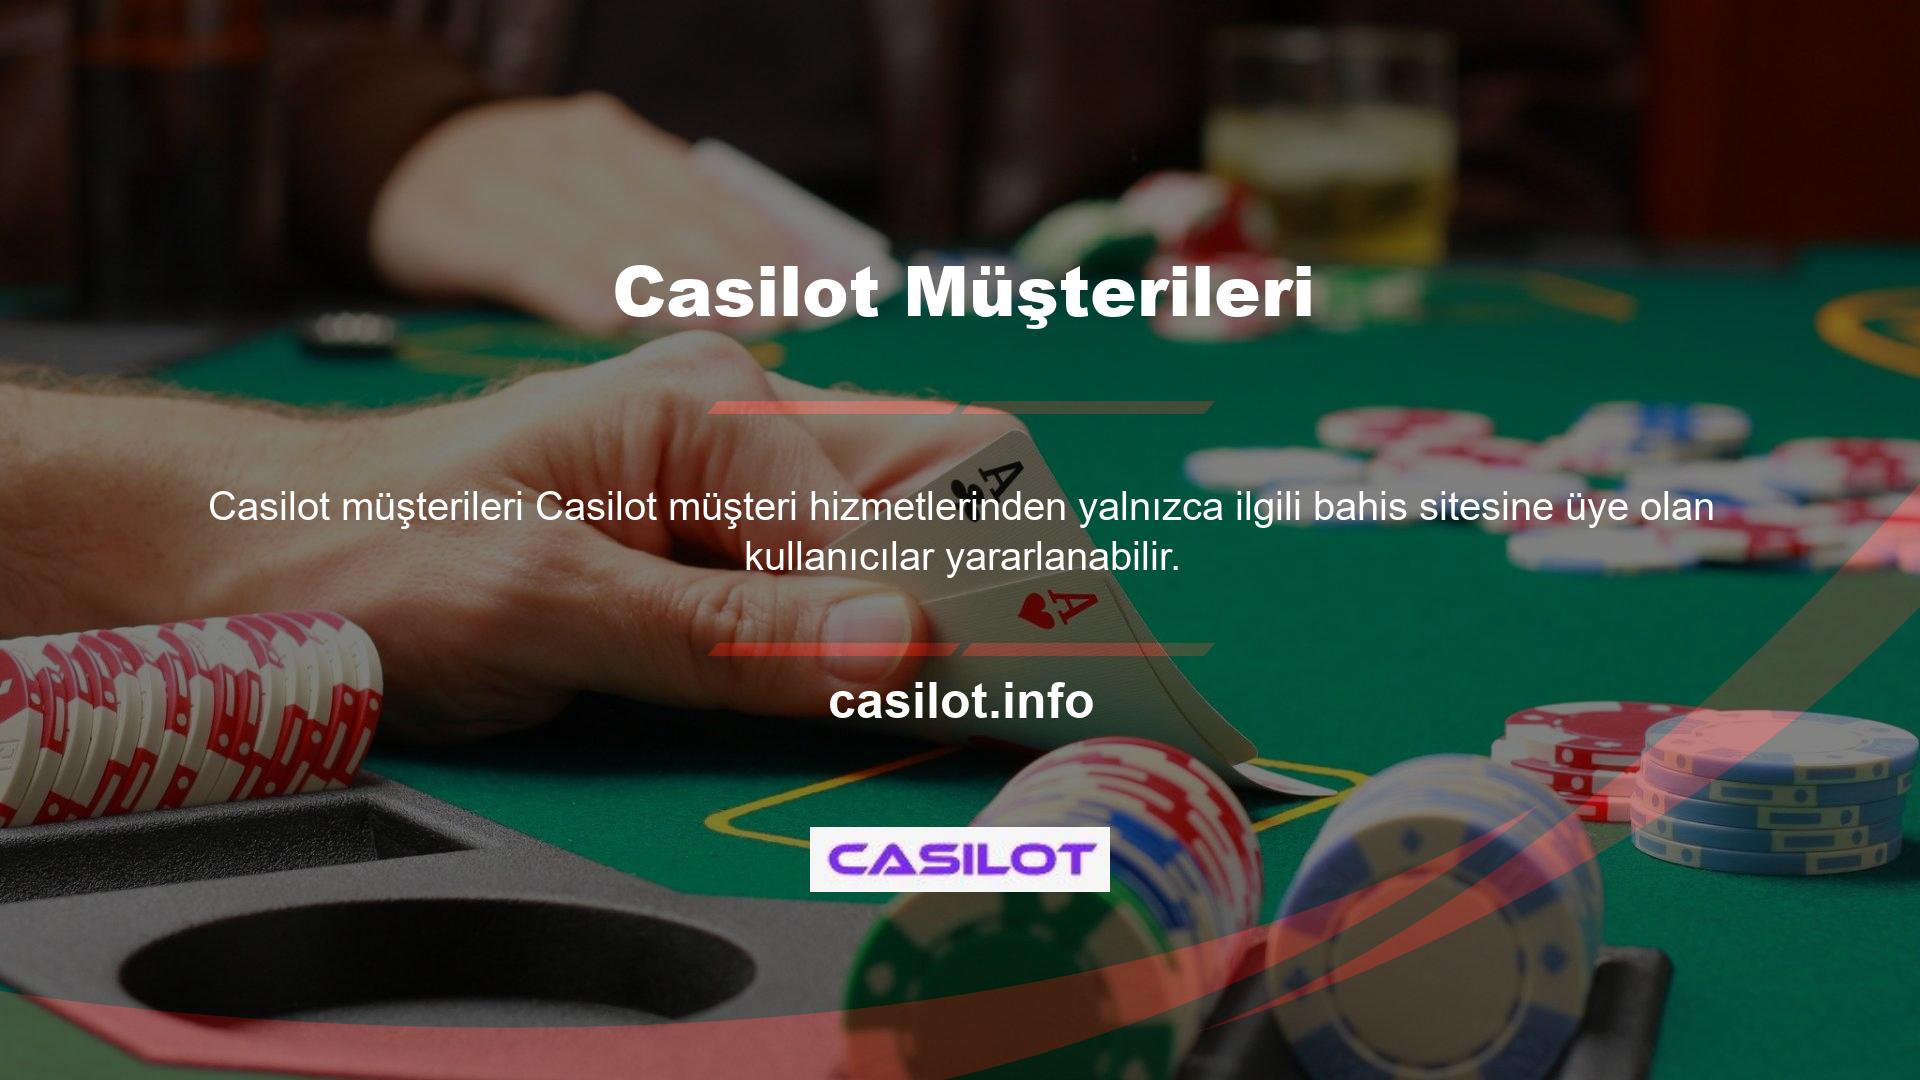 Casilot, kullanıcılarına güvenilir bir bahis deneyimi vaat ederken, casino ve slot seçeneklerinin yanı sıra para yatırma, çekme ve çeşitli bonus seçenekleri de sunuyor